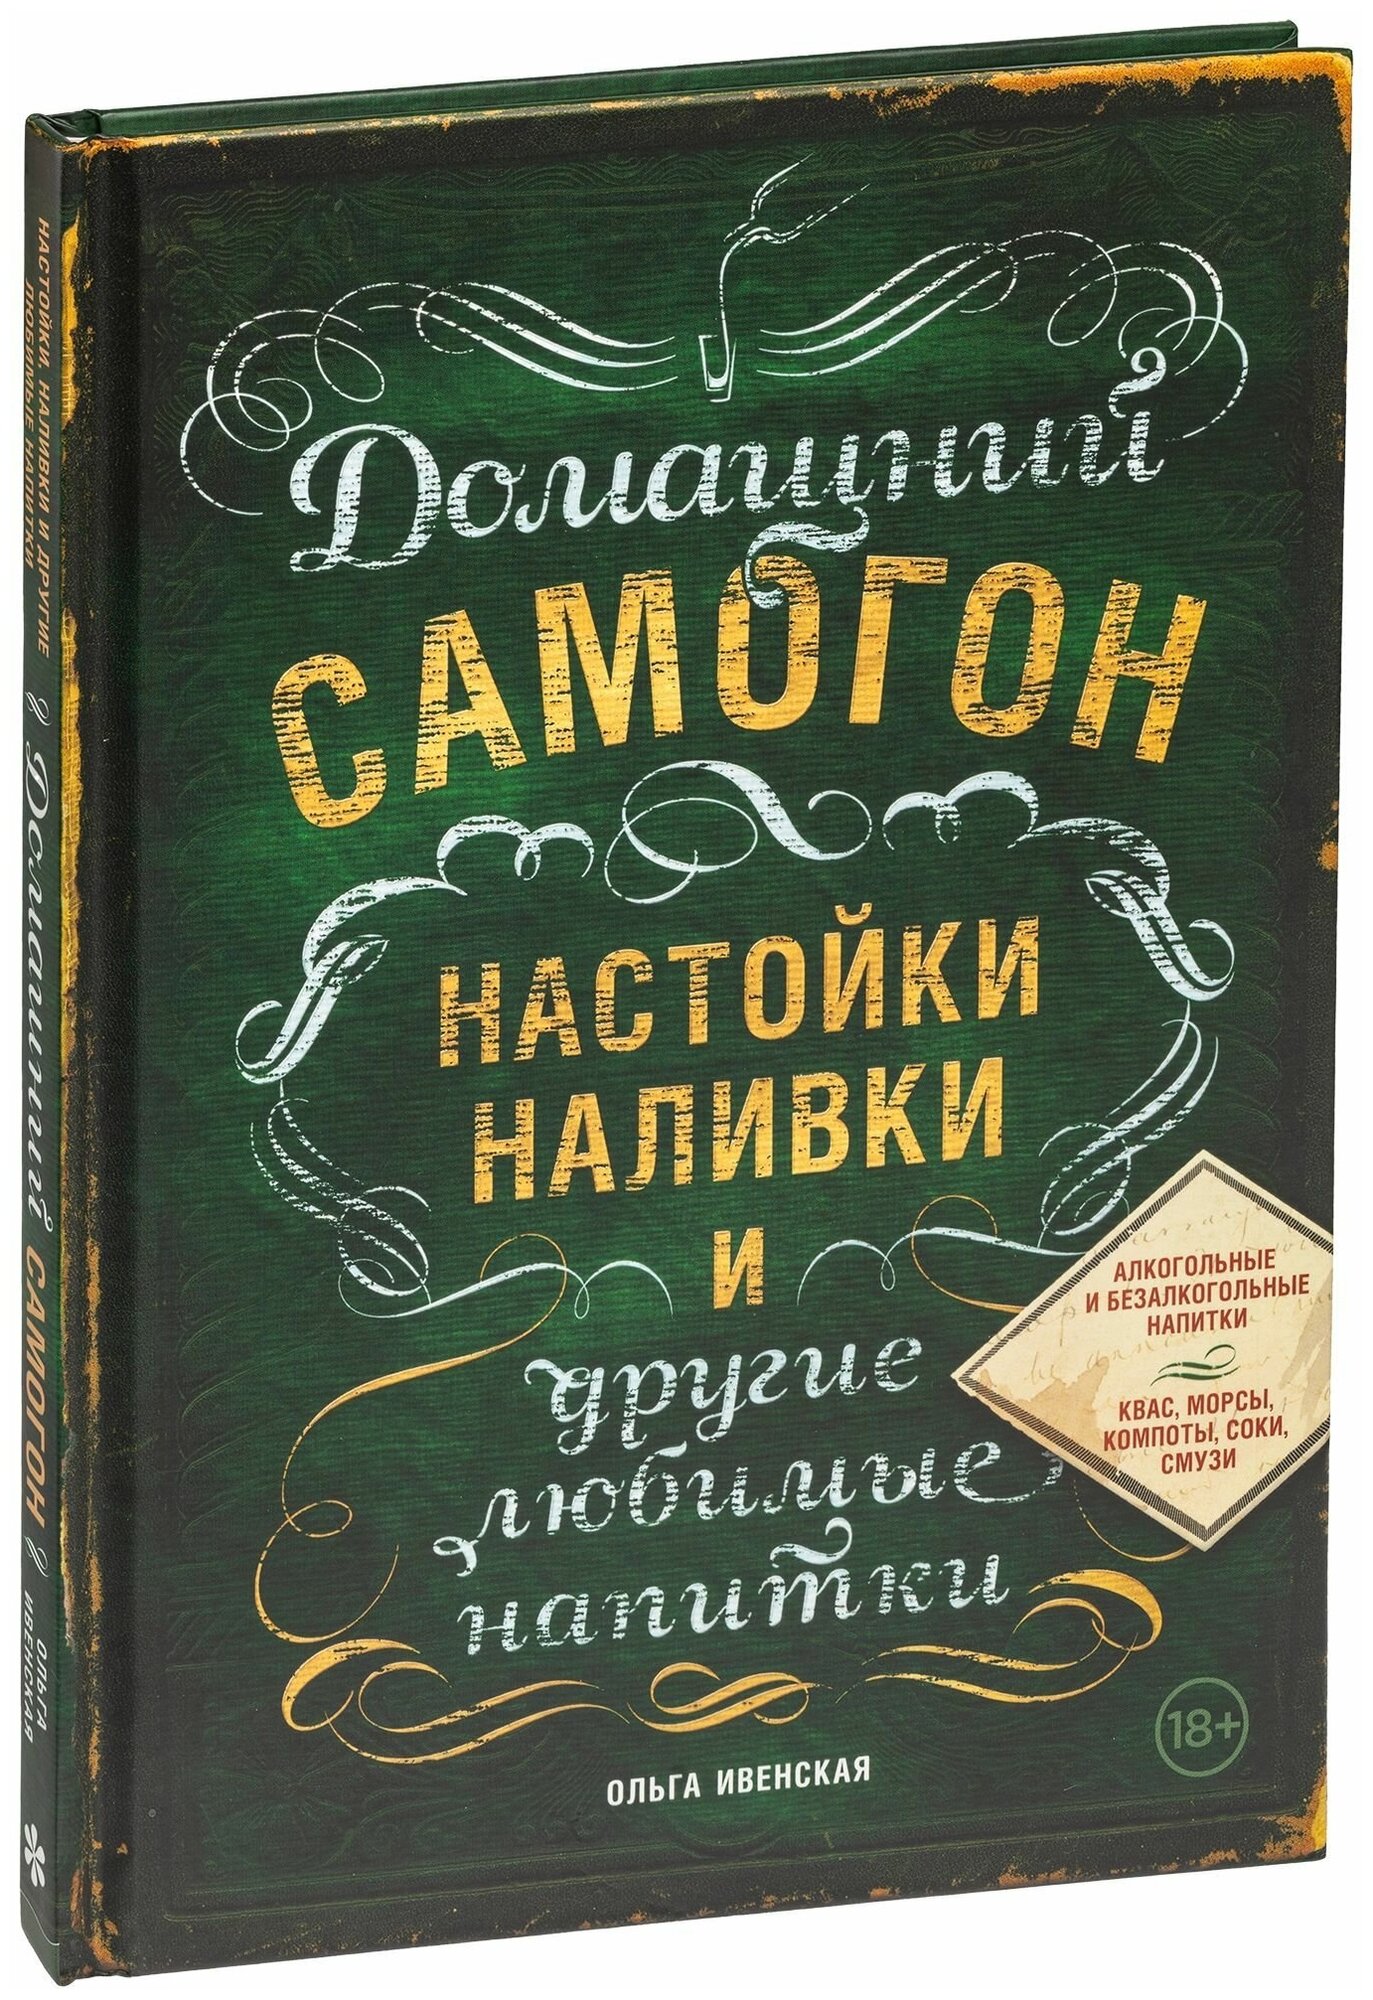 Домашний самогон настойки наливки и другие любимые напитки Книга Ивенская Ольга 18+